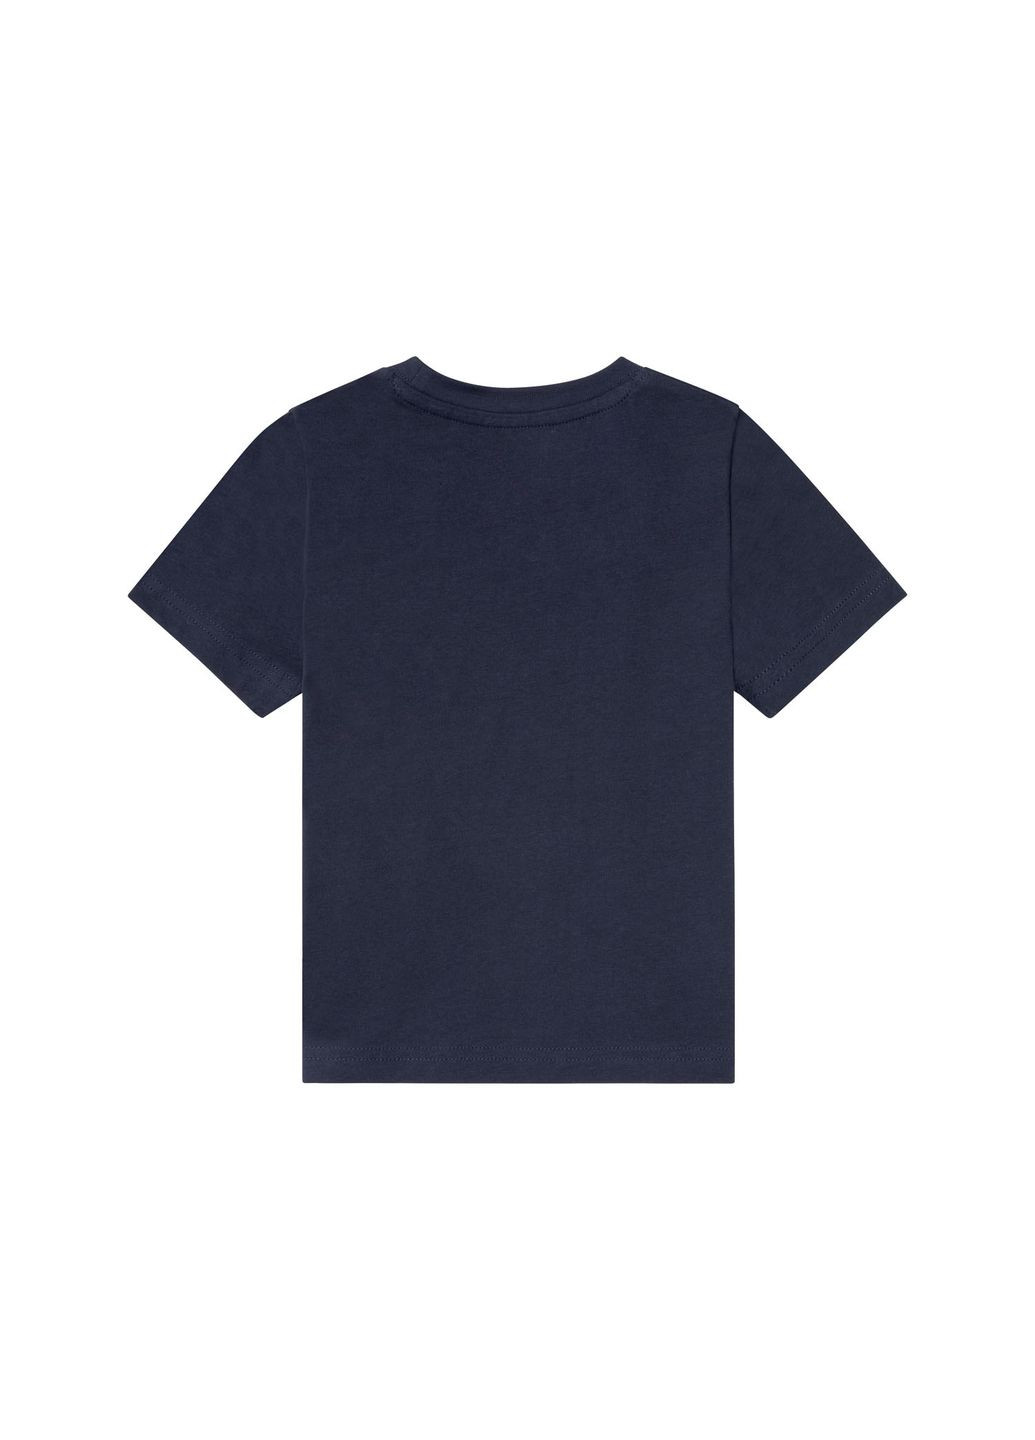 Темно-синя демісезонна футболка бавовняна для хлопчика 370790 темно-синій Lupilu